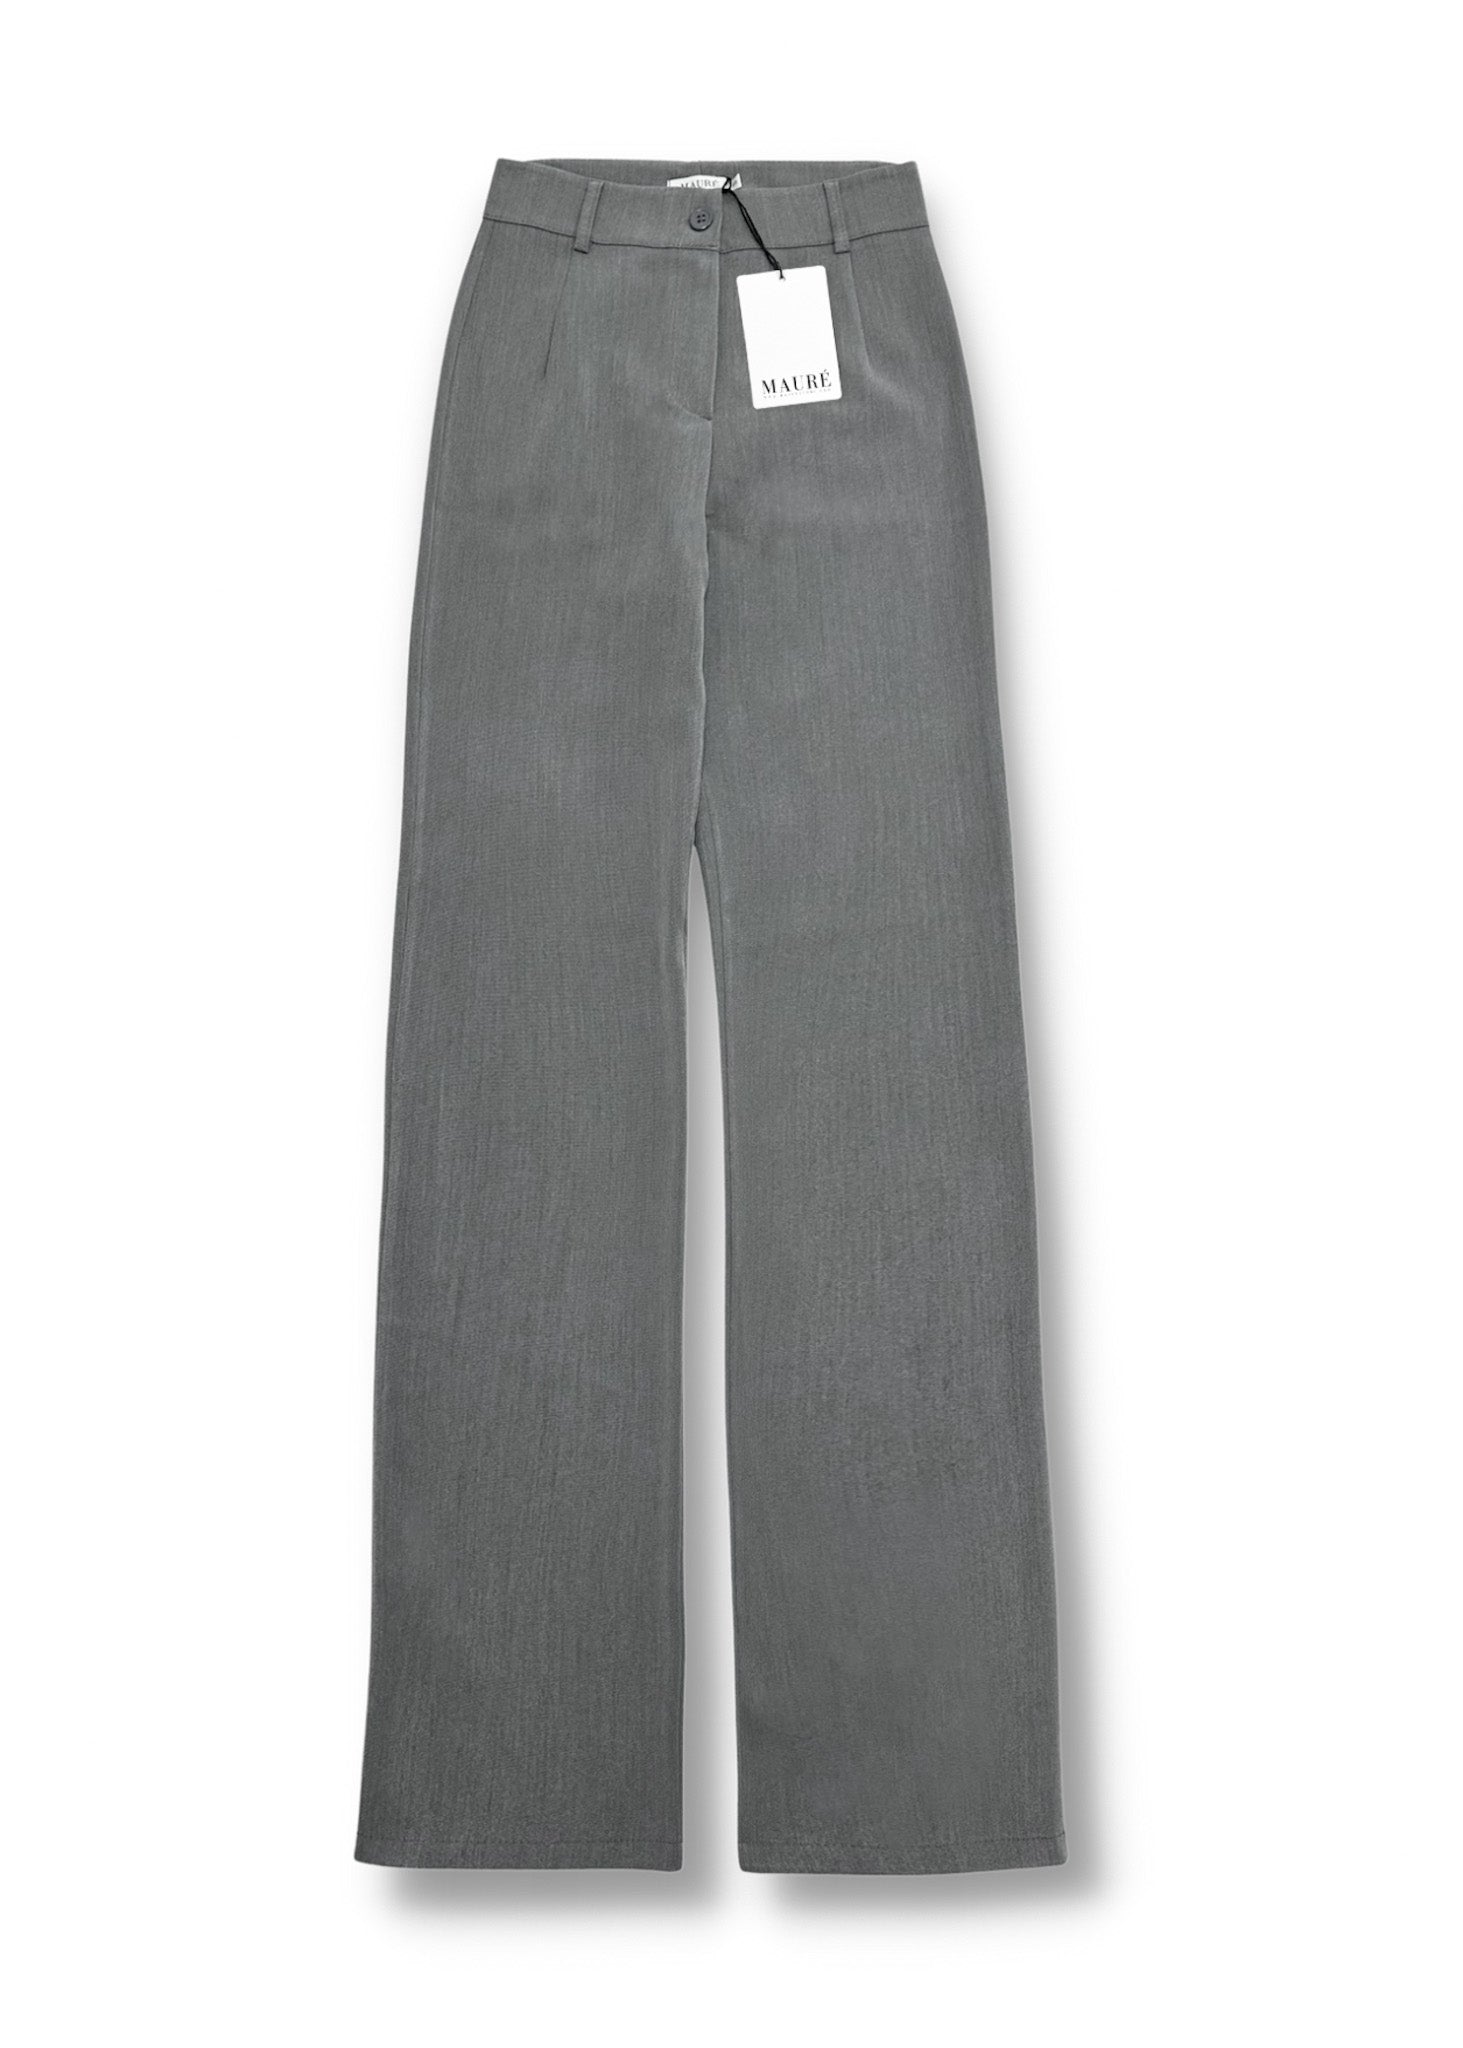 Pantalon droit classique gris clair délavé (TALL)